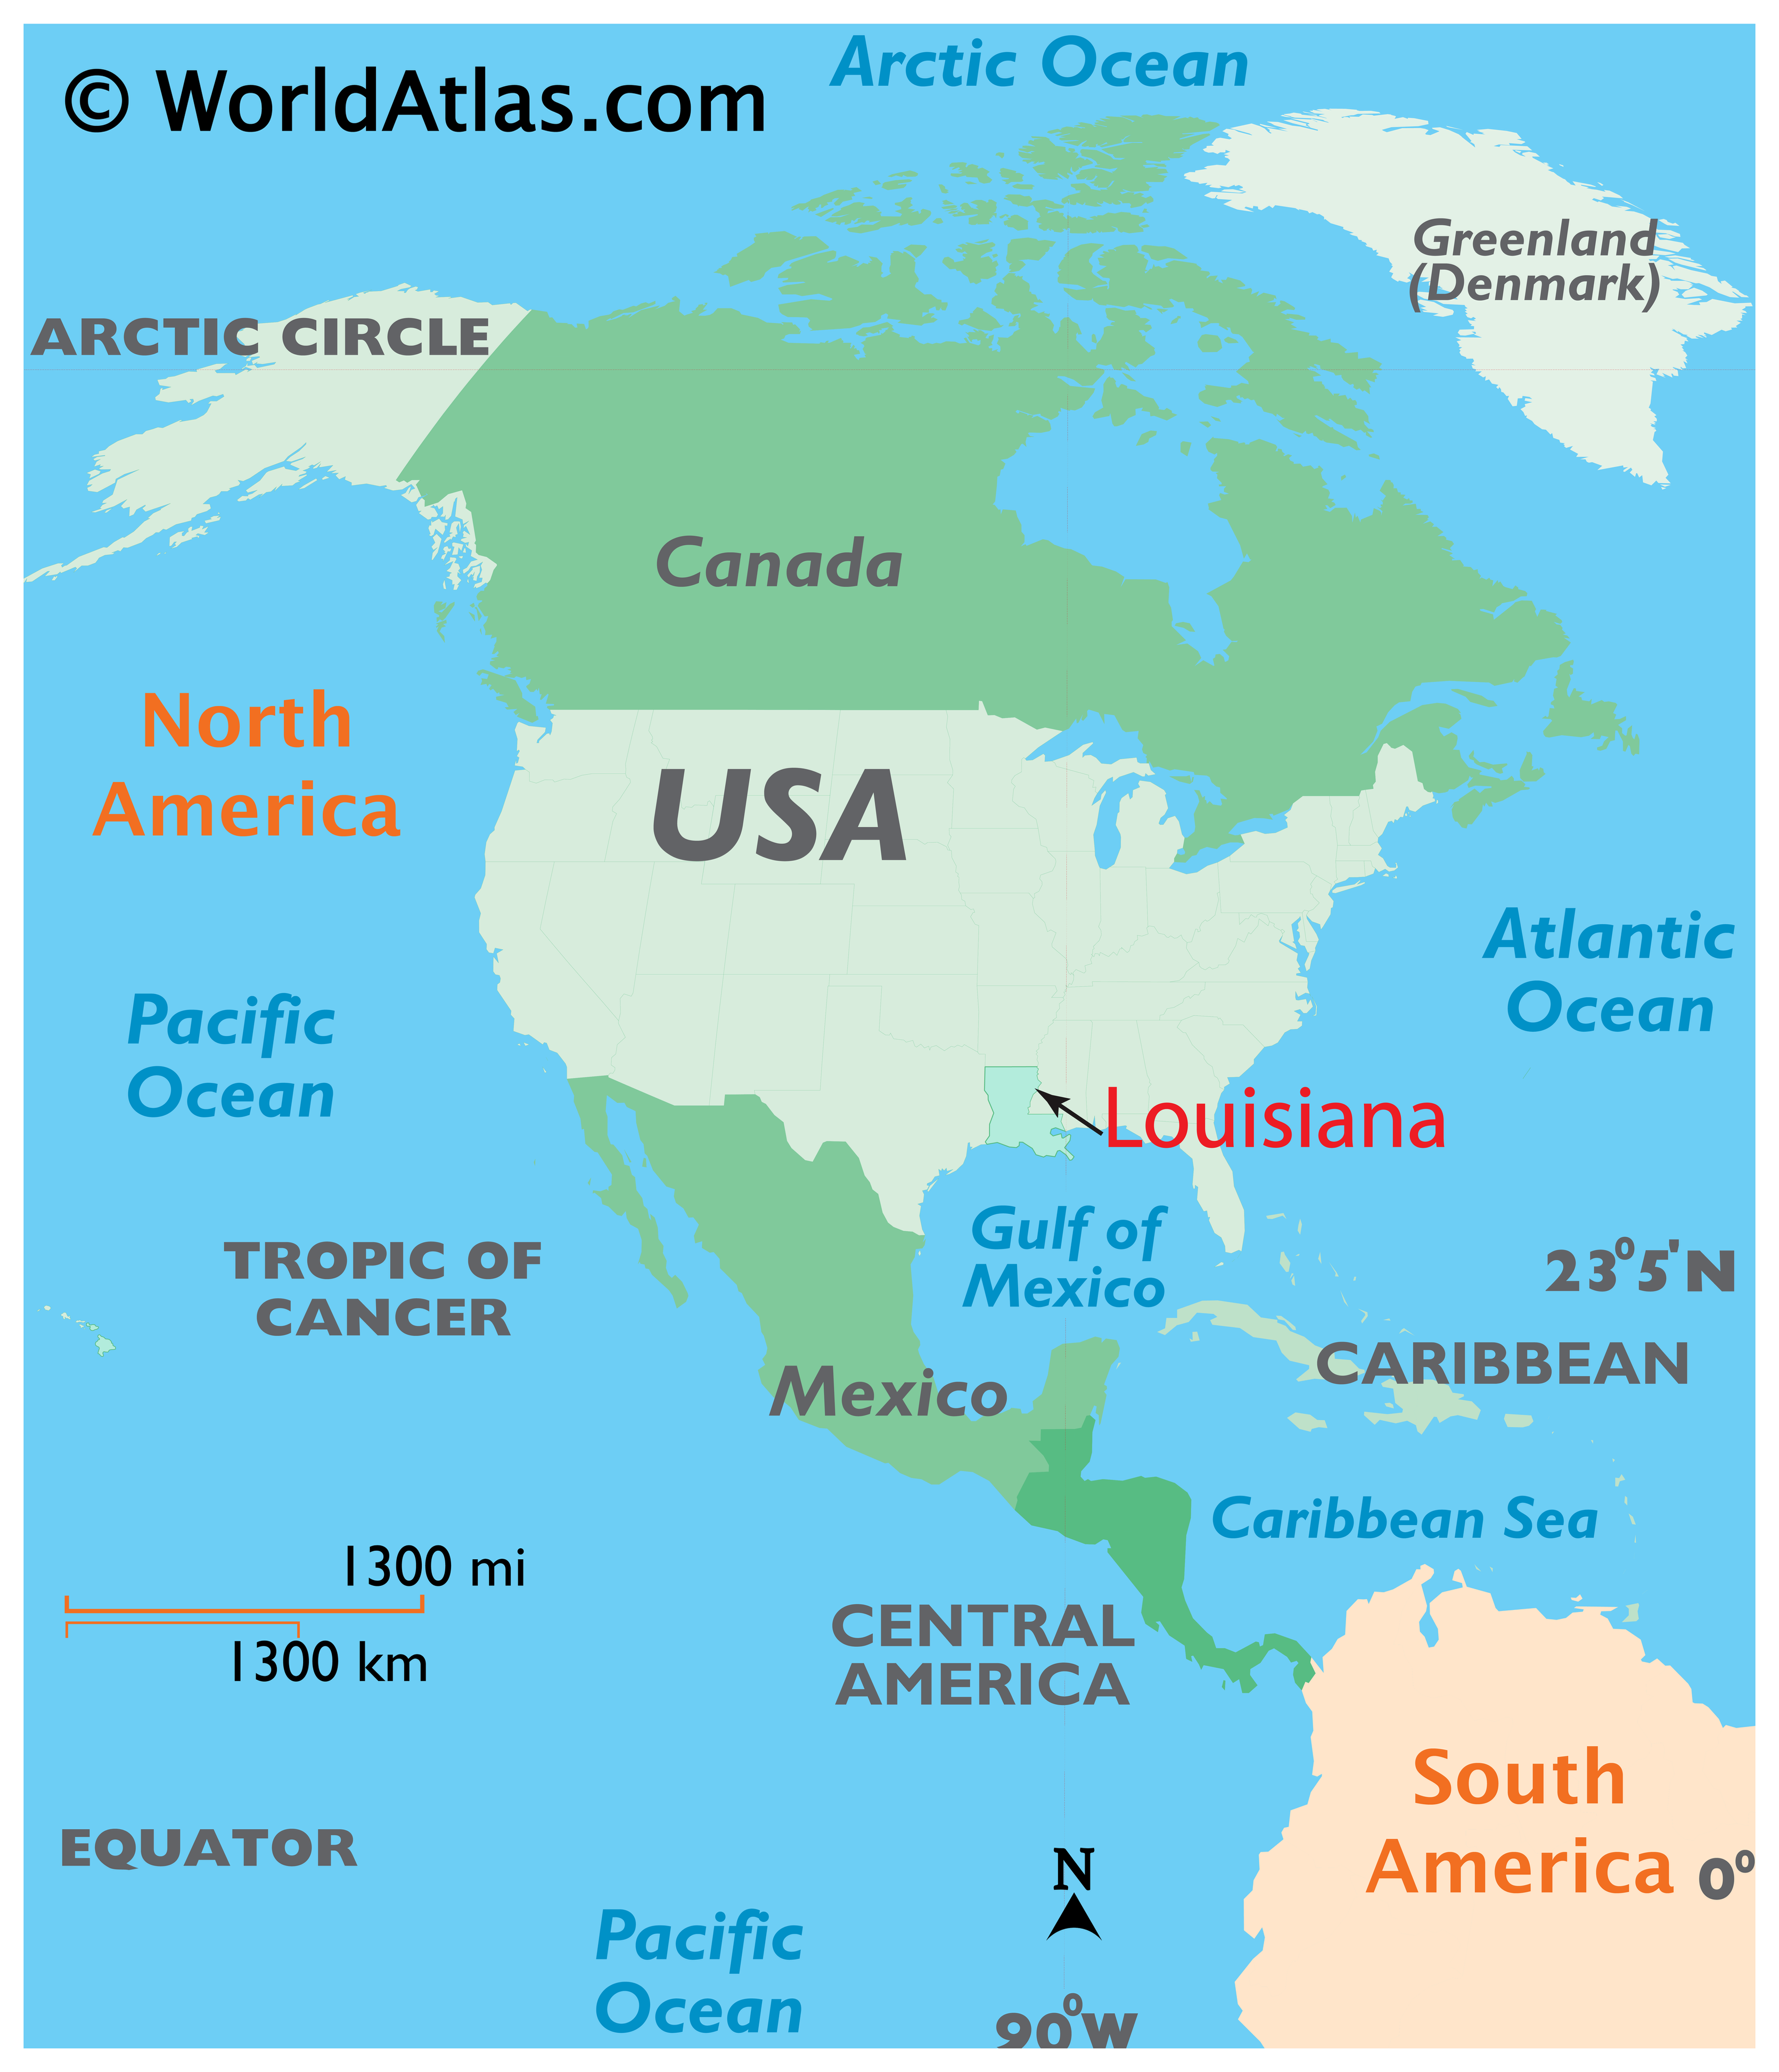 Reference Map of Louisiana, USA